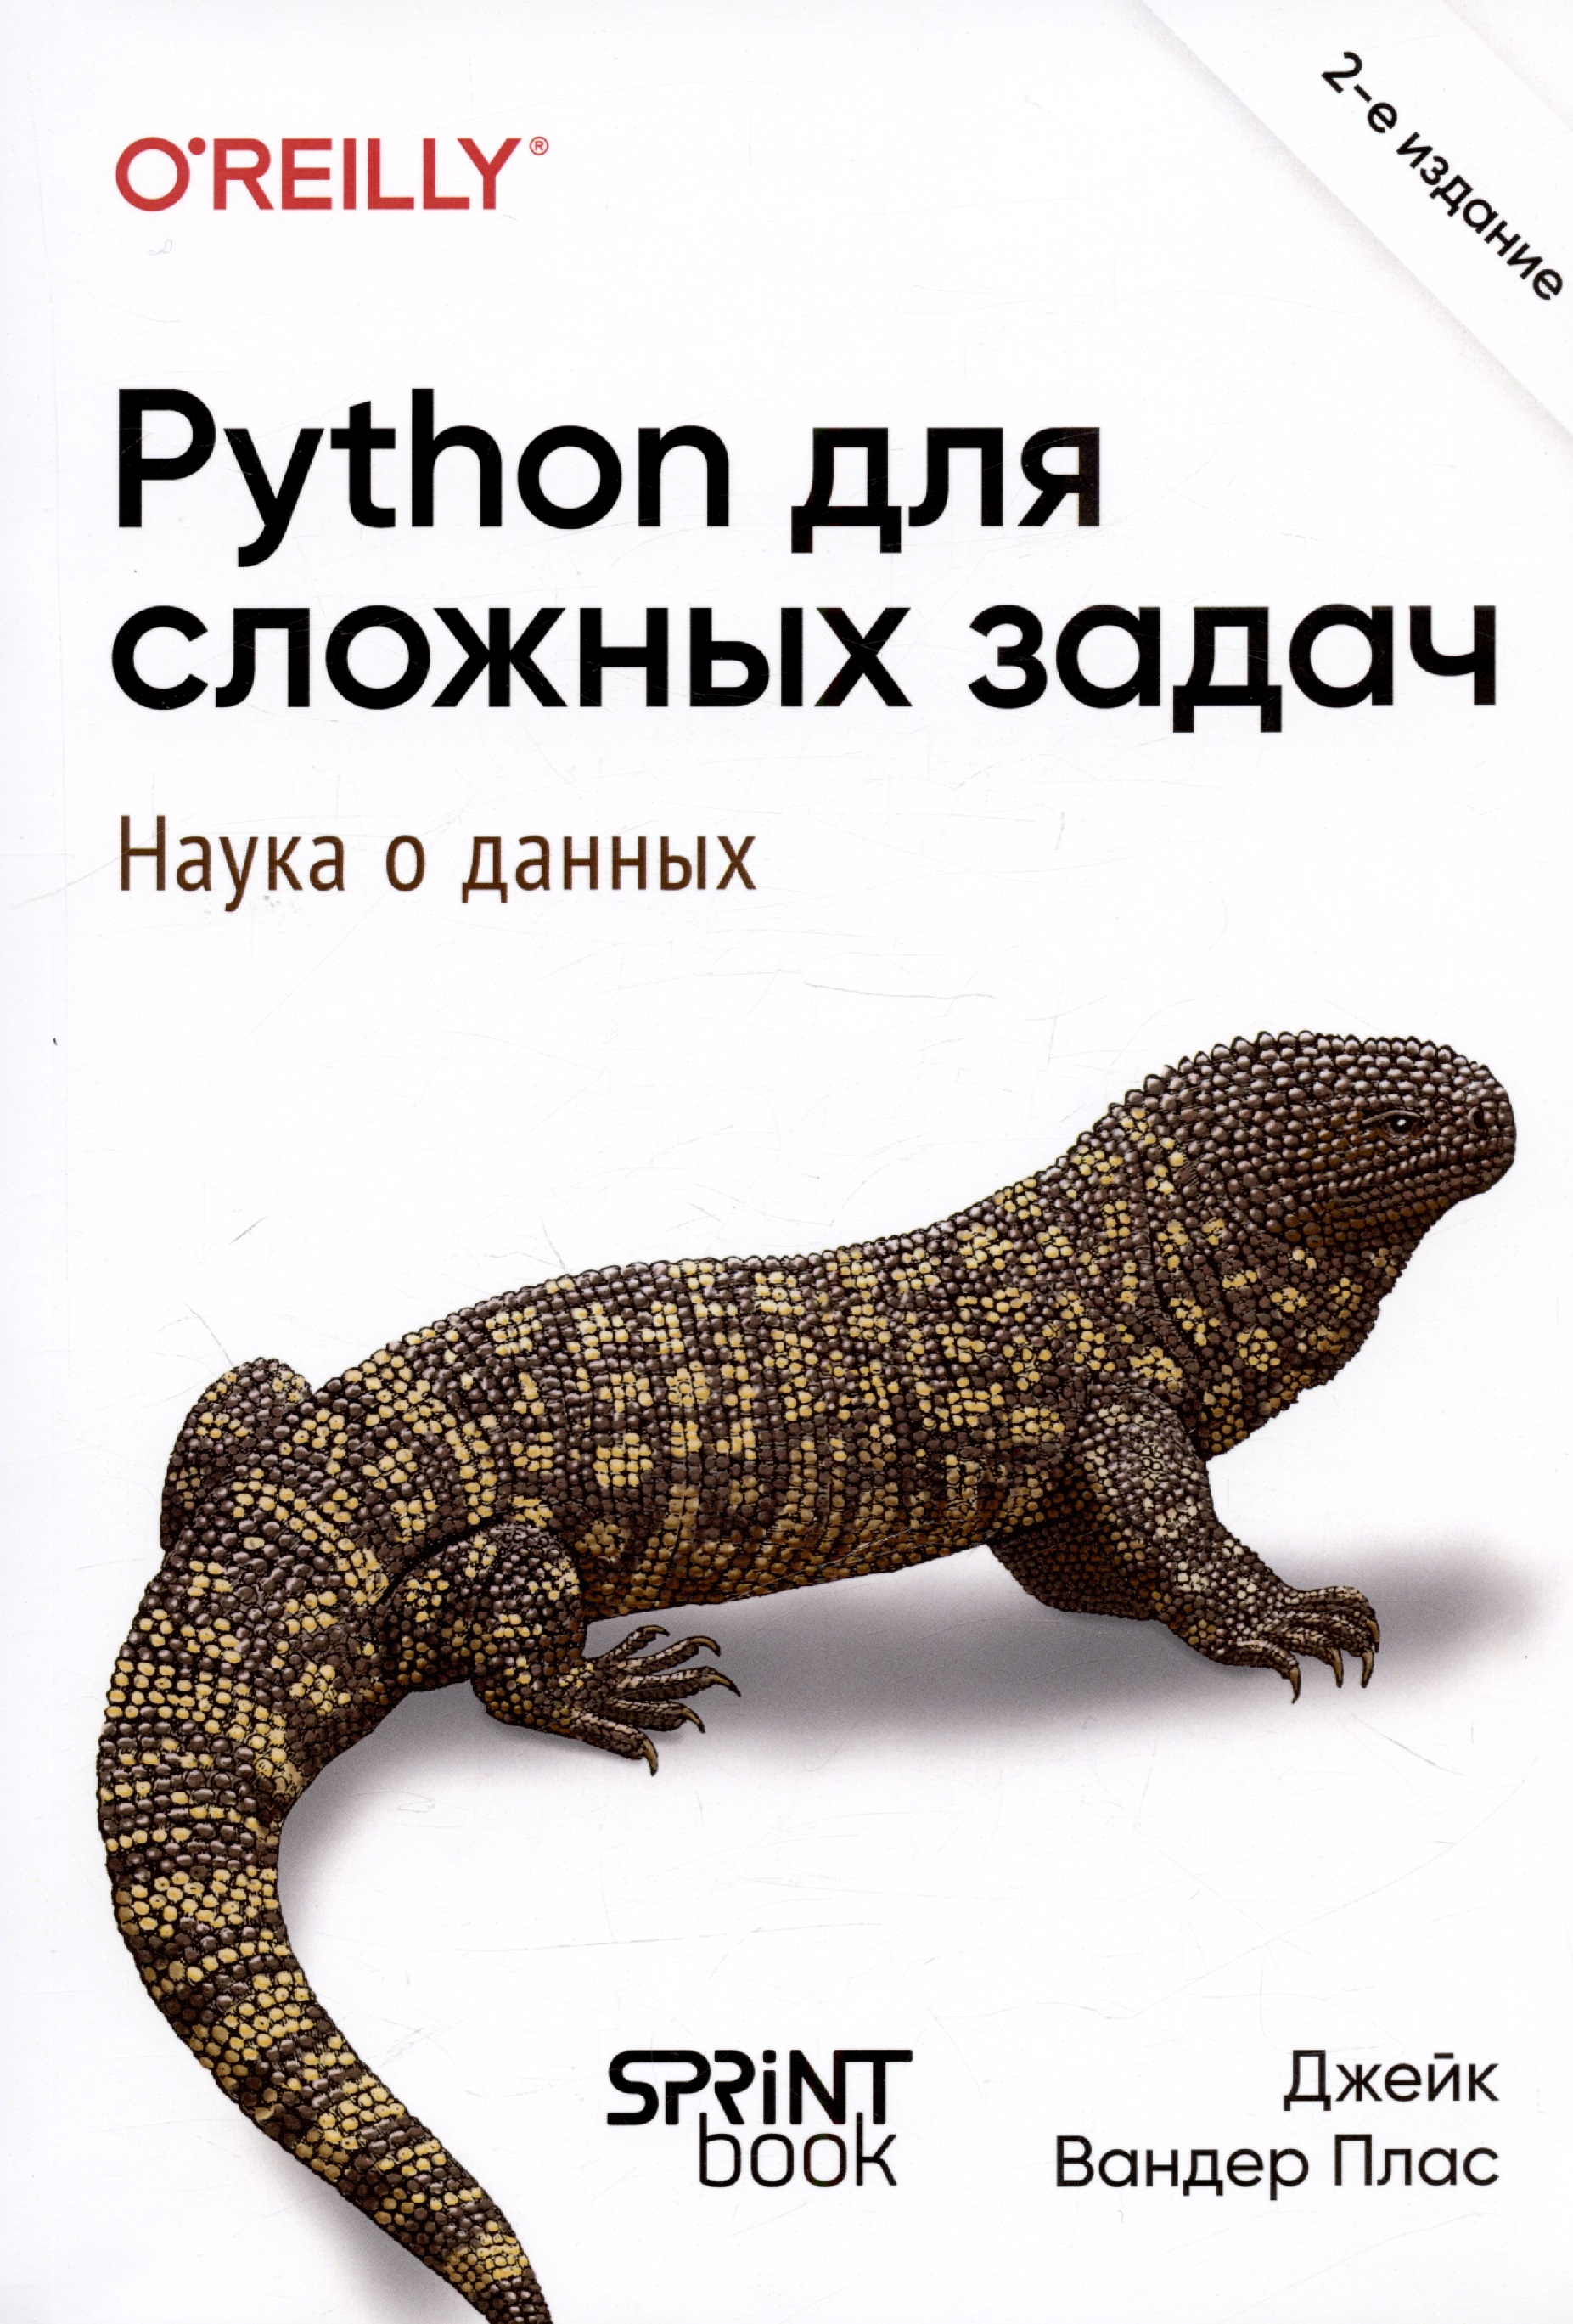 Python для сложных задач: наука о данных. 2-е издание python для сложных задач наука о данных и машинное обучение плас вандер д